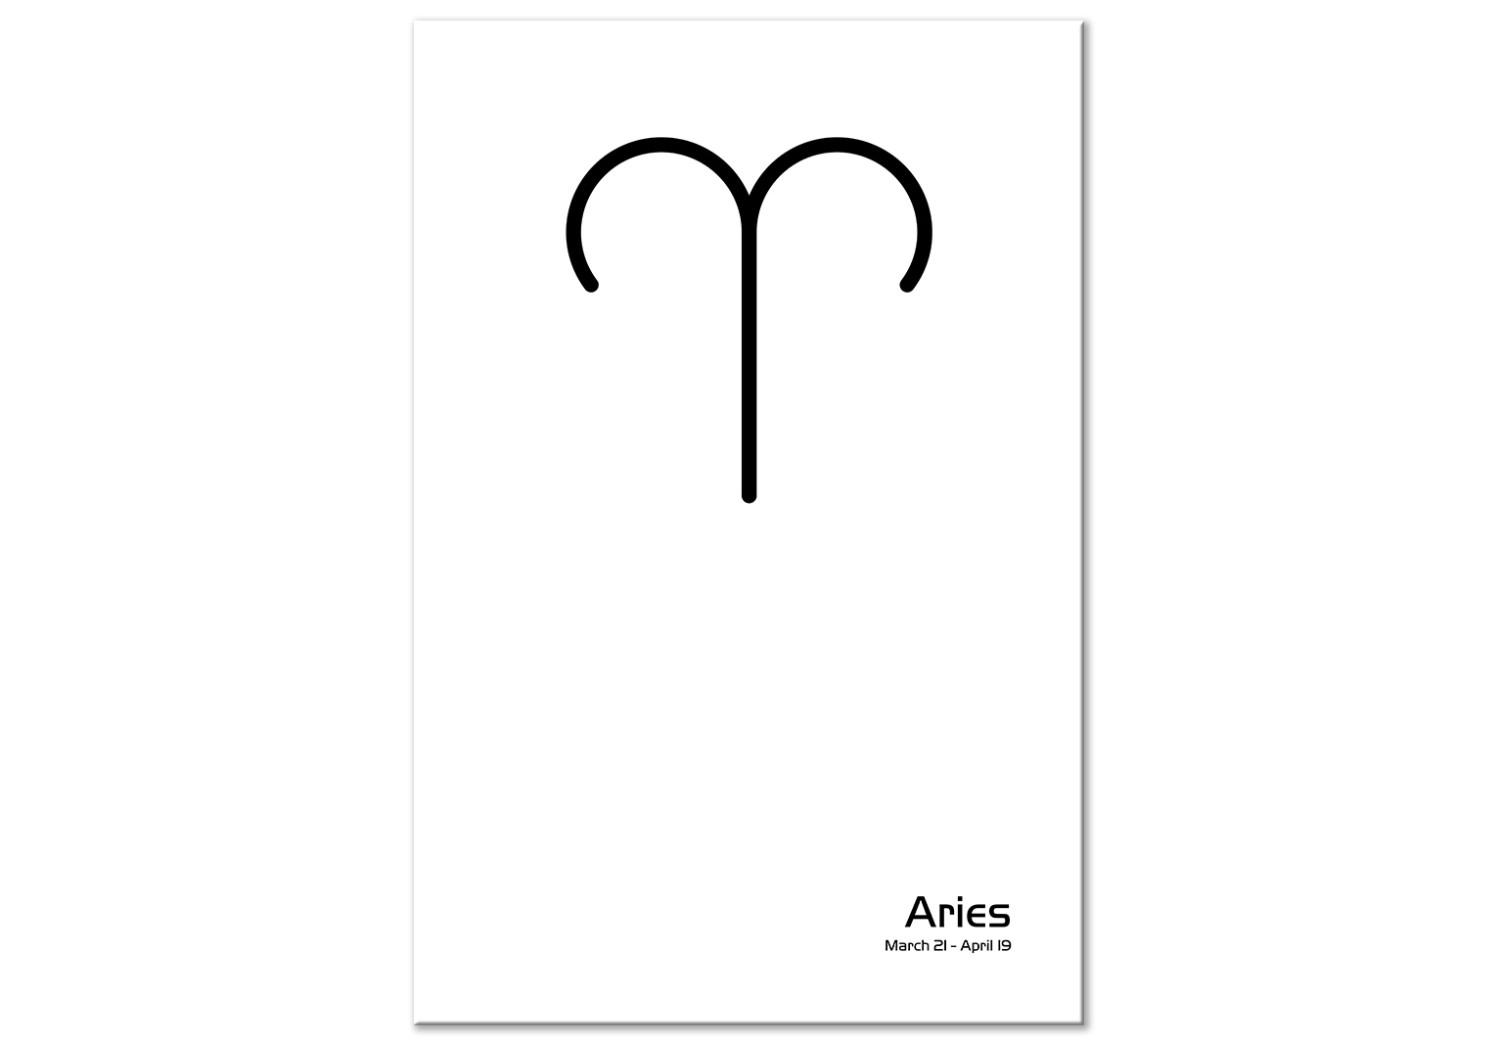 Cuadro decorativo Aries - gráfico en blanco y negro con letras negras